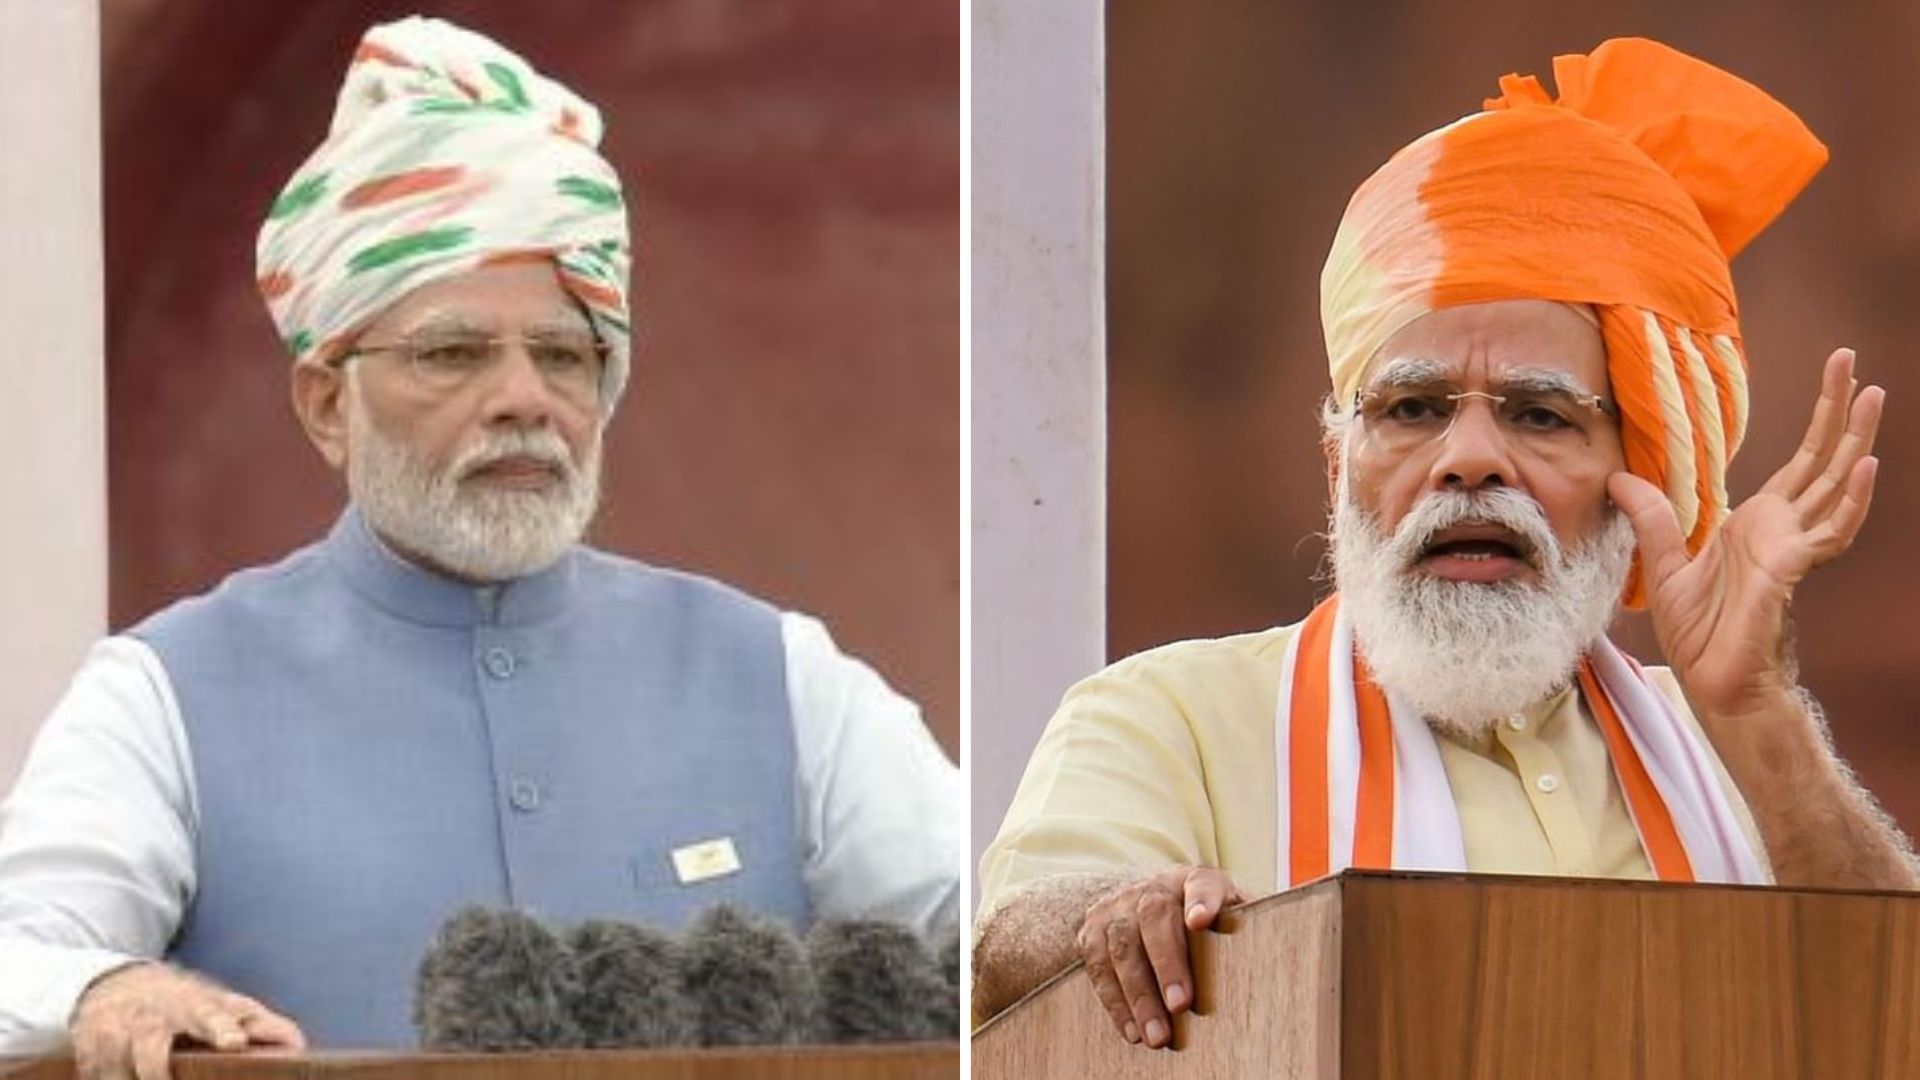 Independence Day 2022: 9 सालों से प्रधानमंत्री के साफे का बदलता रंग, इस साल पगड़ी में दिखा ये बदलाव